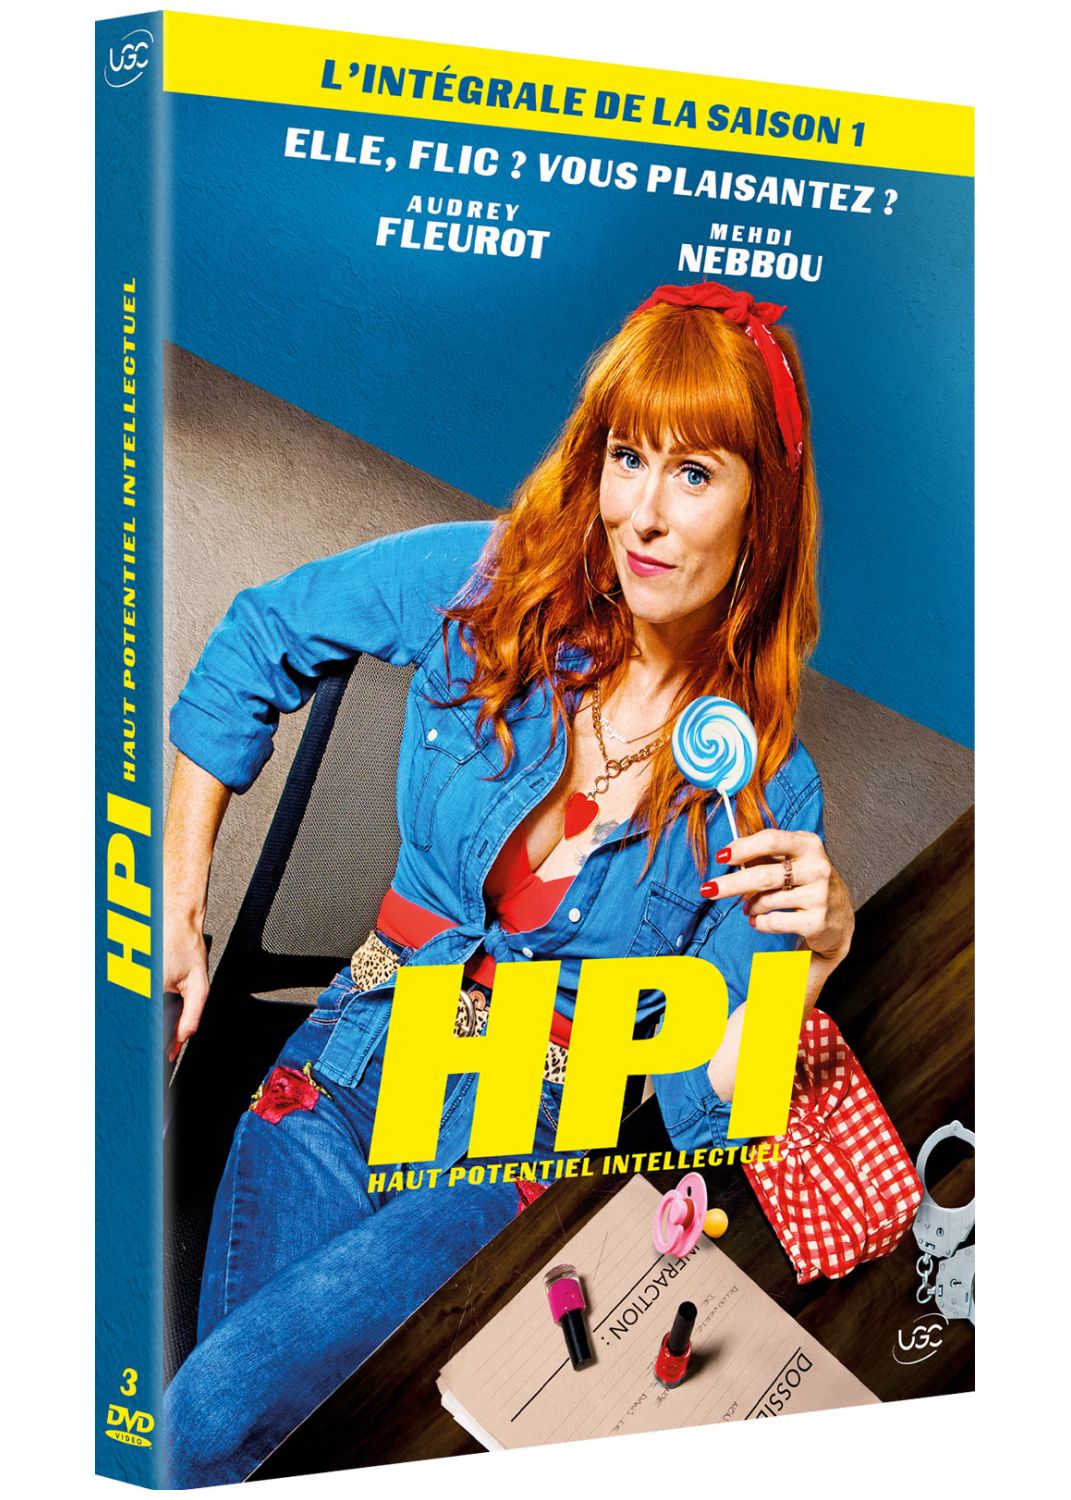 HPI - Haut Potentiel Intellectuel - Saison 1 [DVD à la location]